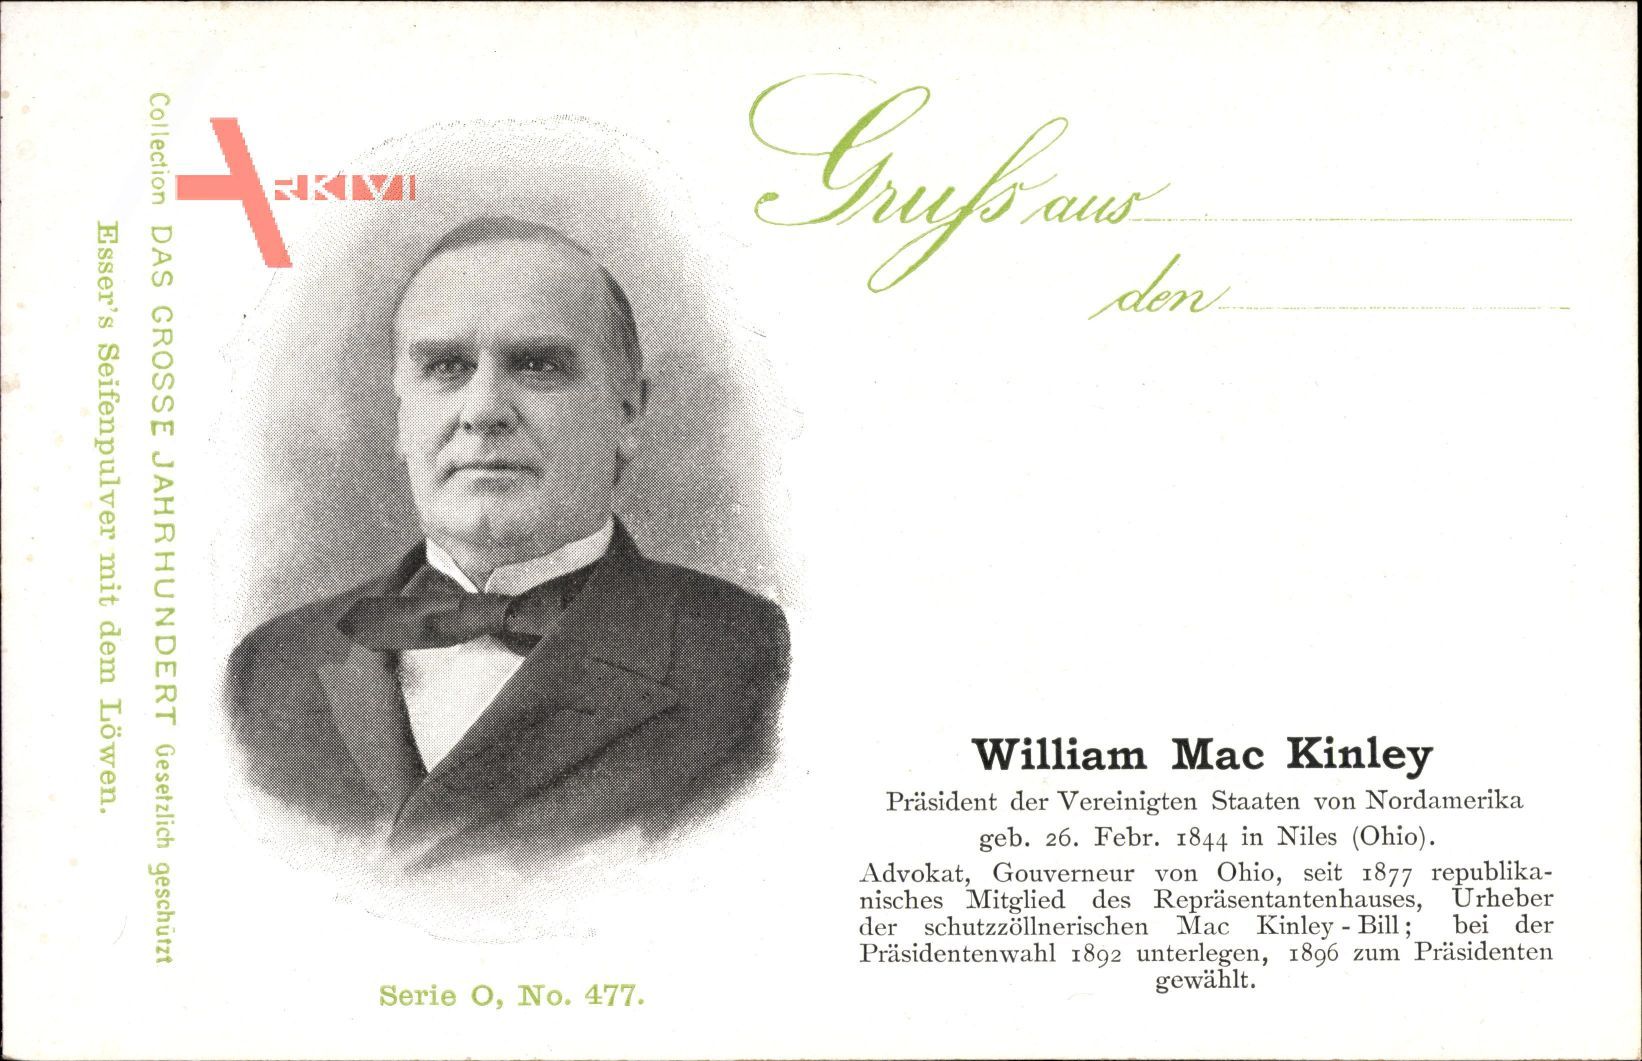 William McKinley, 25. Präsident der Vereinigten Staaten, 1897 bis 1901